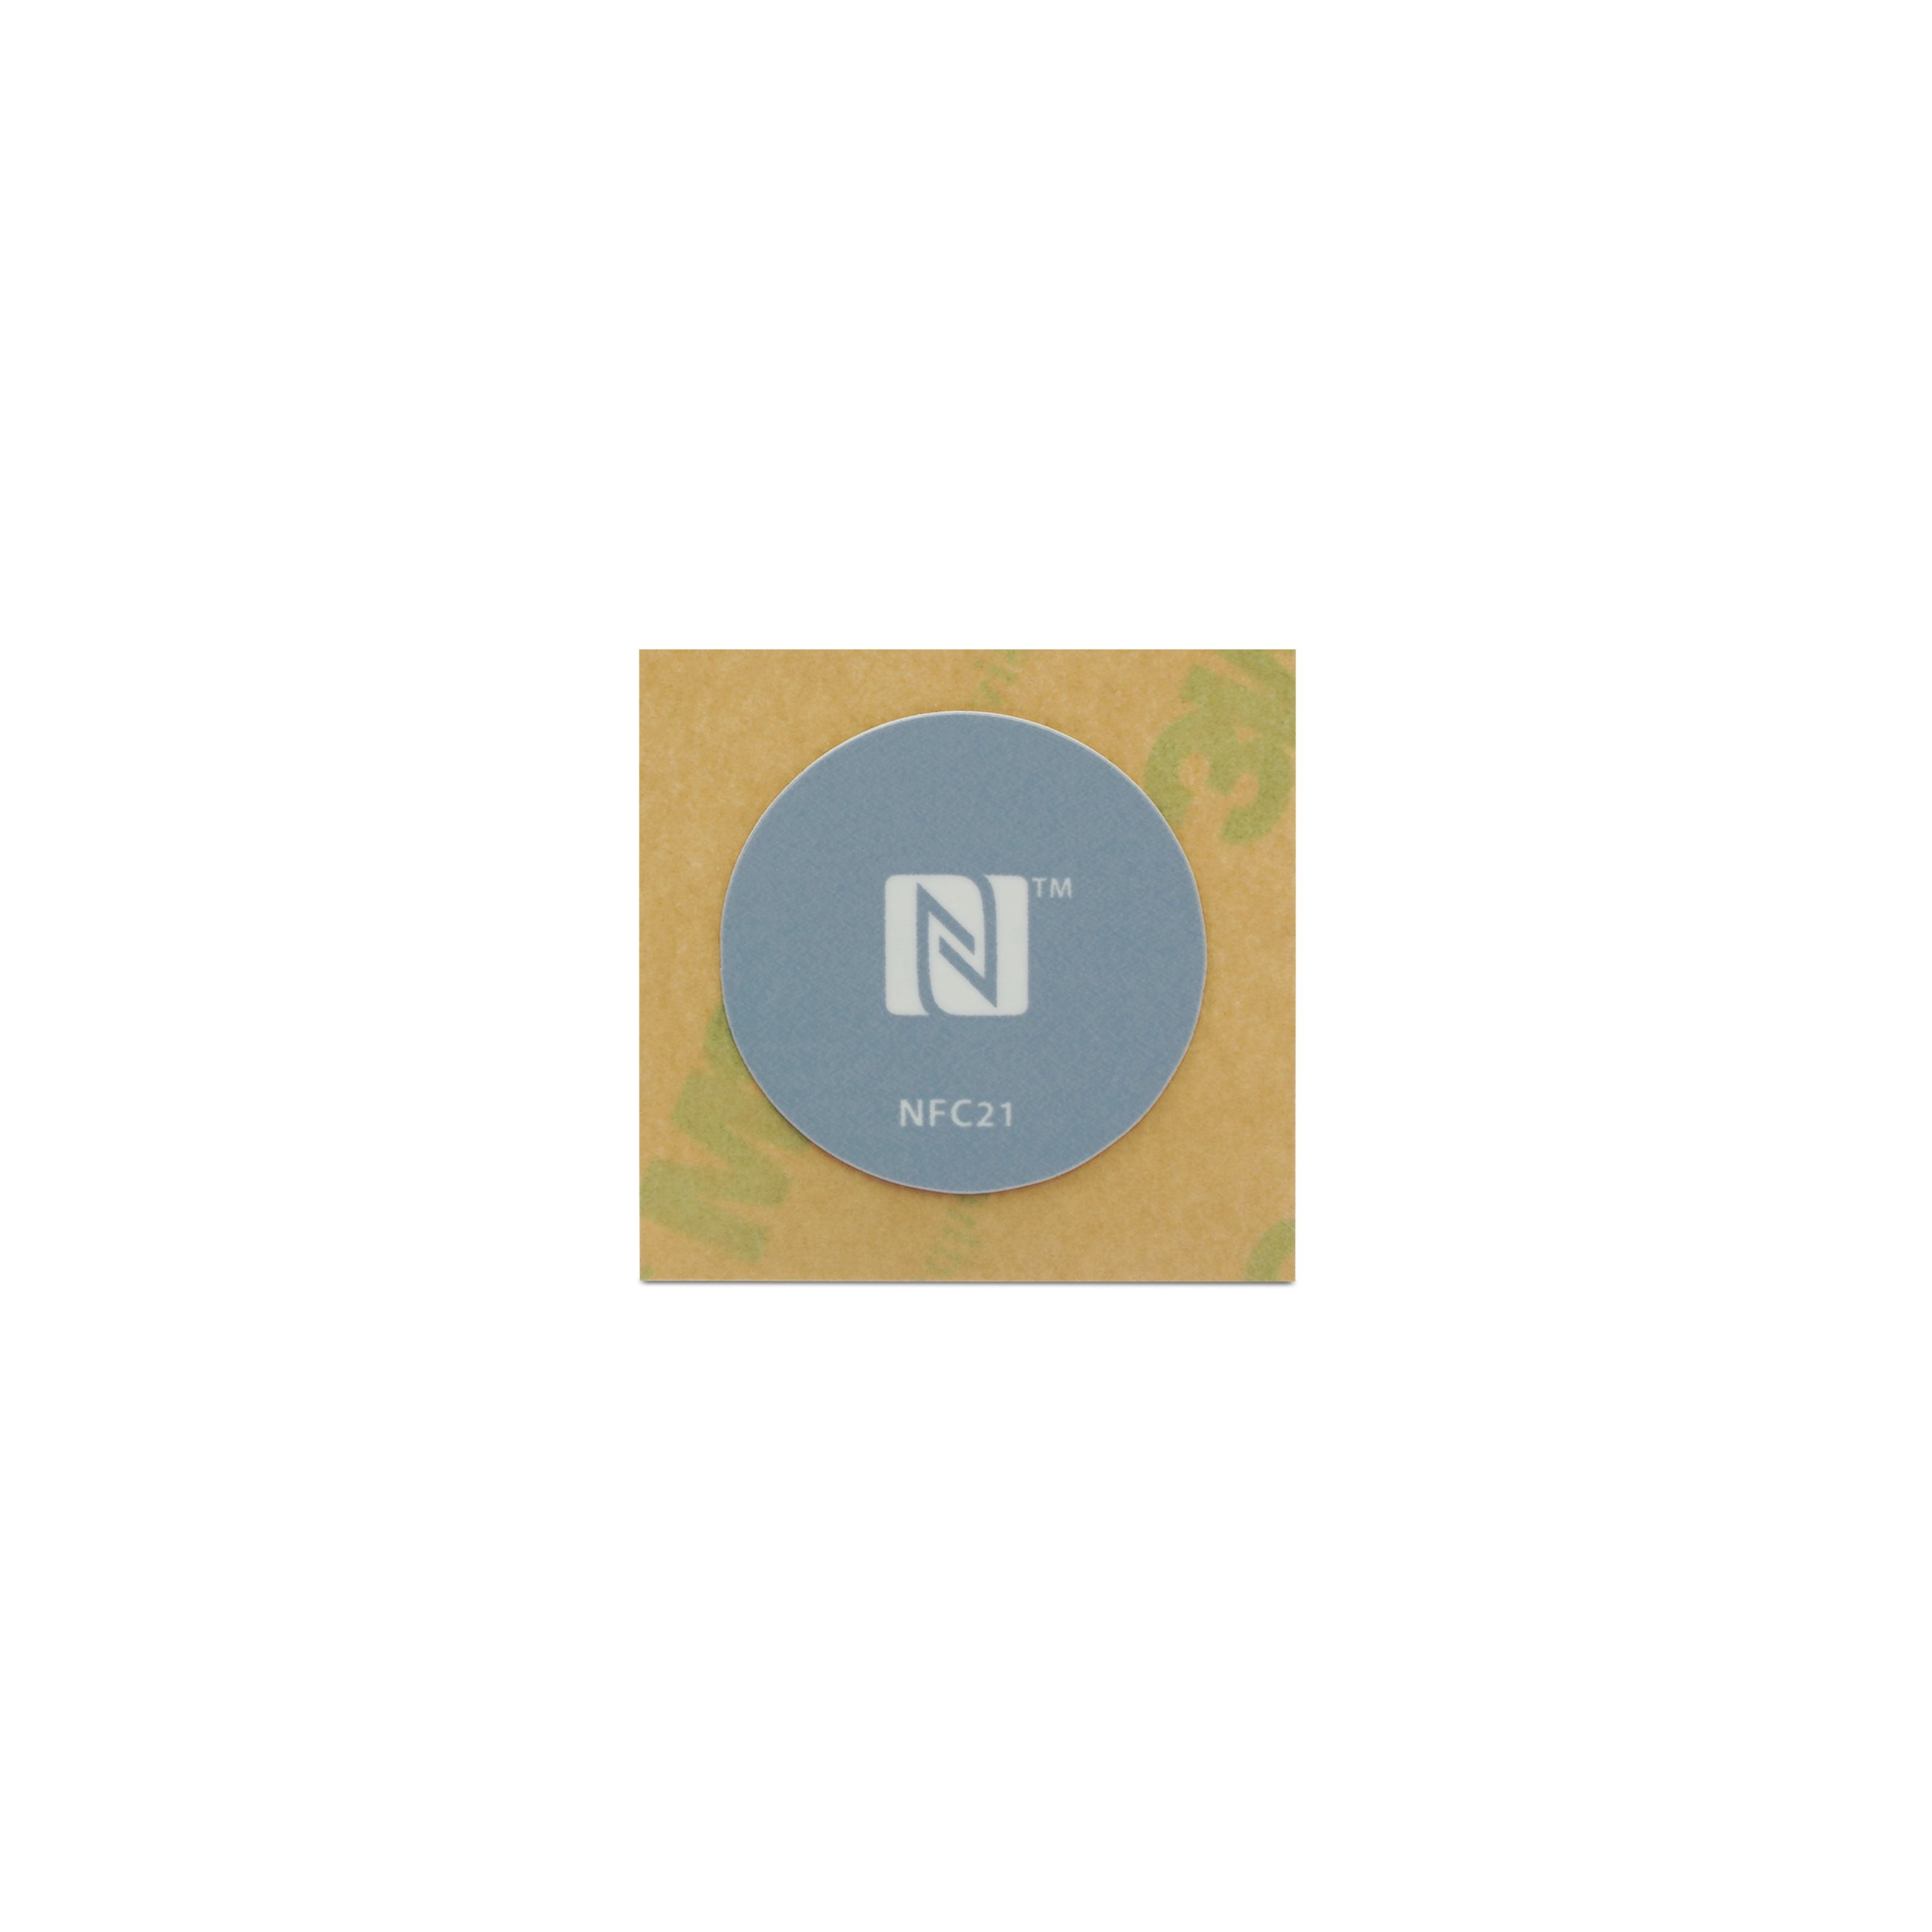 NFC Sticker PET - On-Metal - 22 mm - NTAG213 - 180 Byte - grau mit Logo